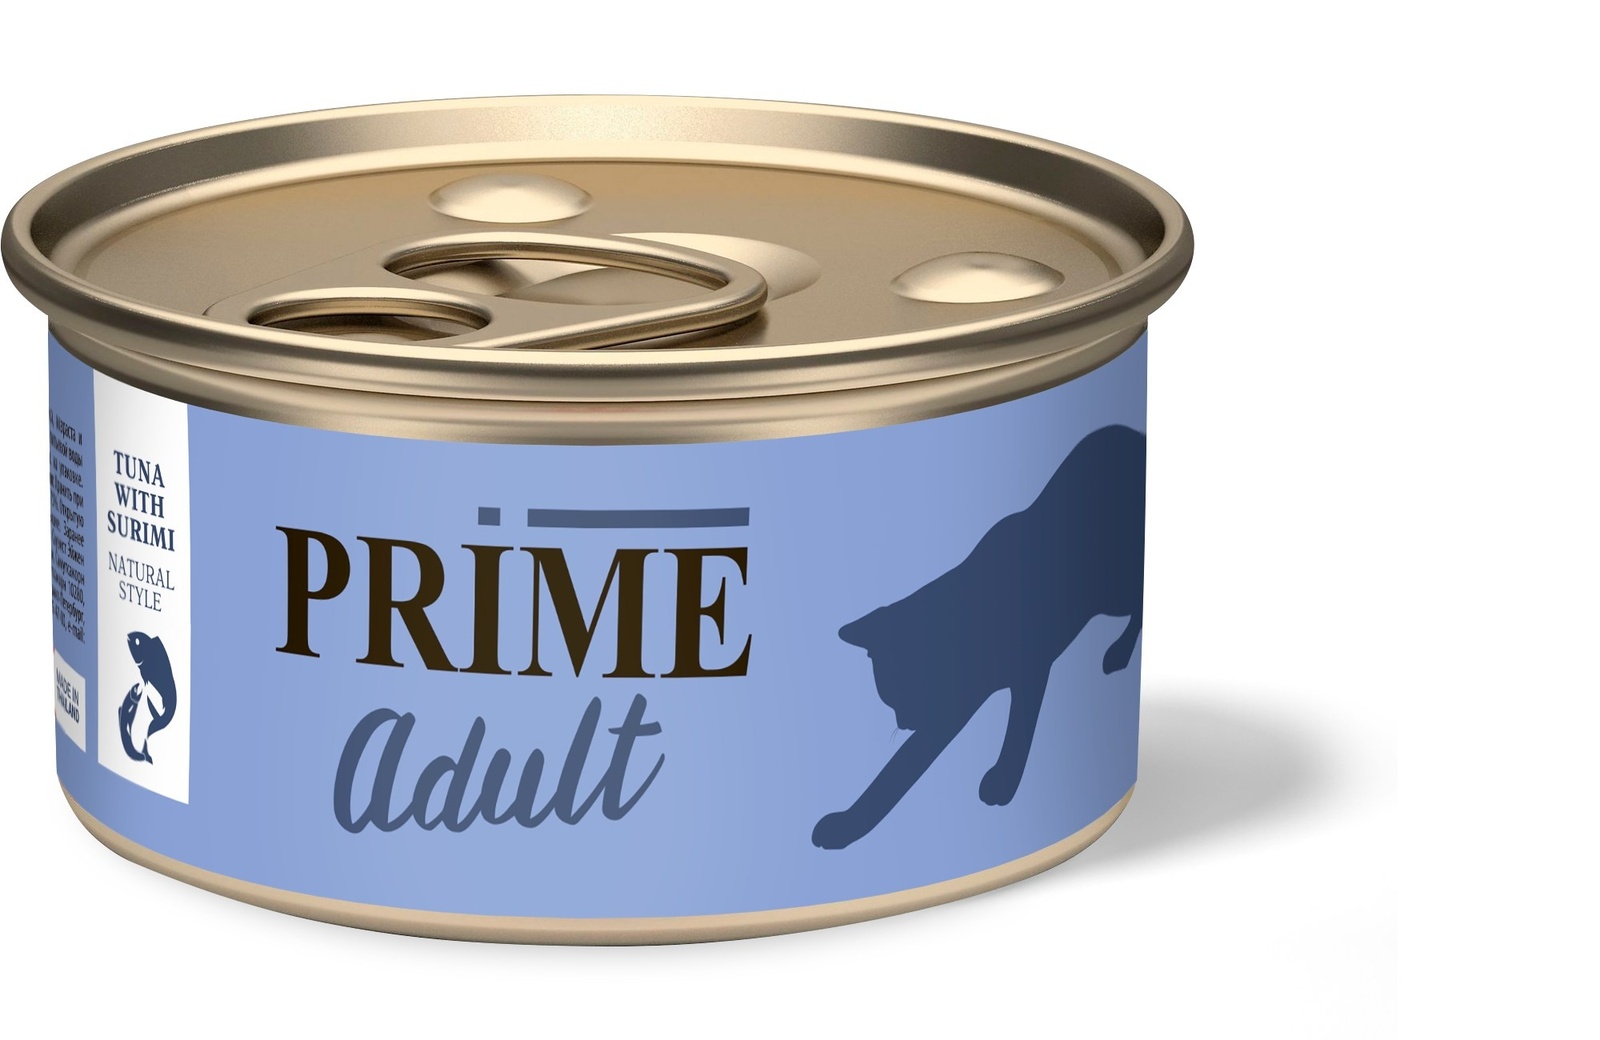 Prime Prime консервы для кошек тунец с сурими в собственном соку (70 г) краб путина камчатский фенси натуральный в собственном соку 410 г